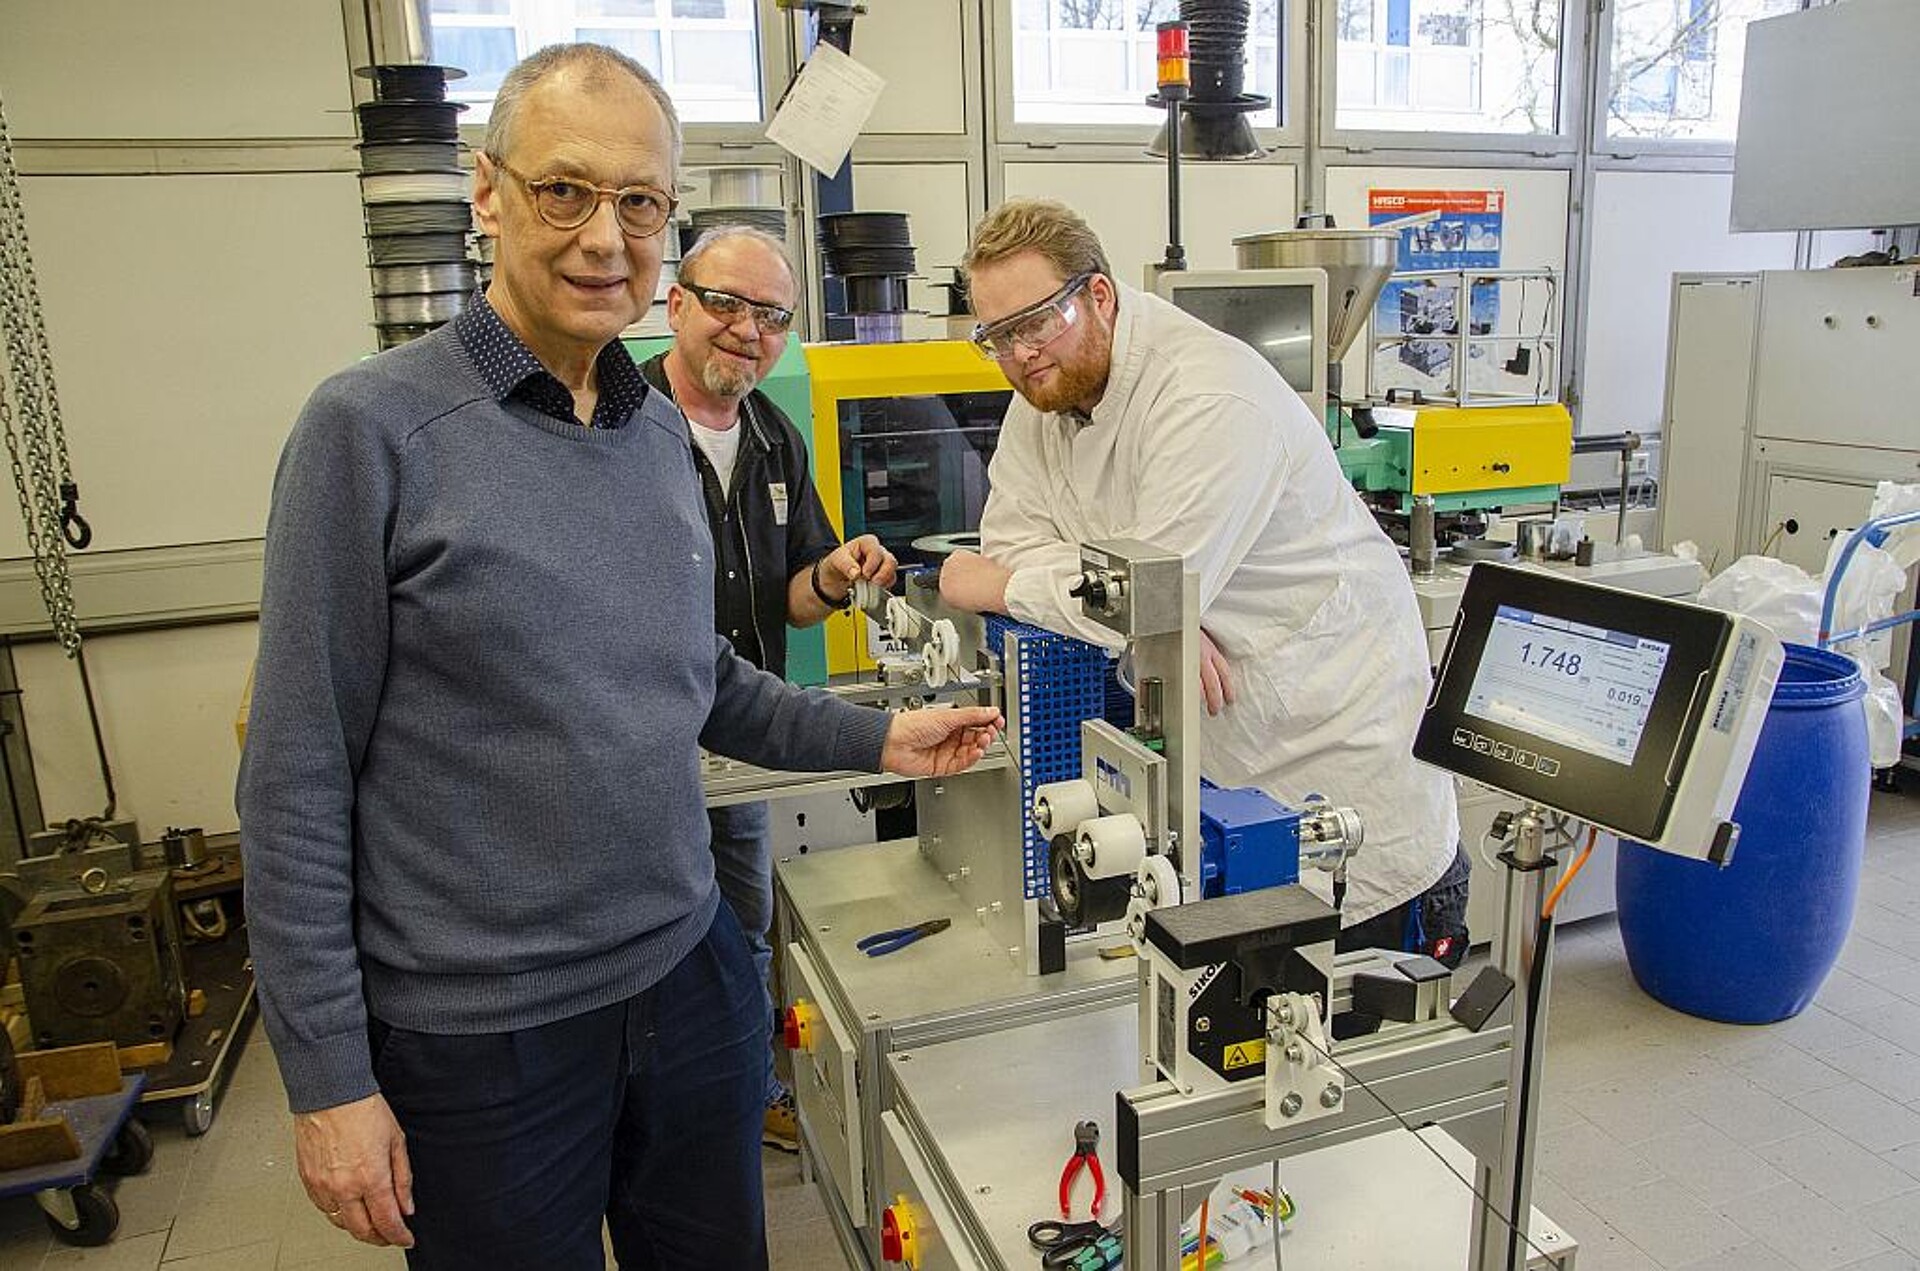 Laborleiter Prof. Dr. Reinhard Lorenz (l.) will mit der Anlage die Hochschule mit Filament versorgen und sieht in ihr auch großes Potenzial für die eigene Forschung in der Kunststofftechnologie. (Foto: FH Münster/Frederik Tebbe)